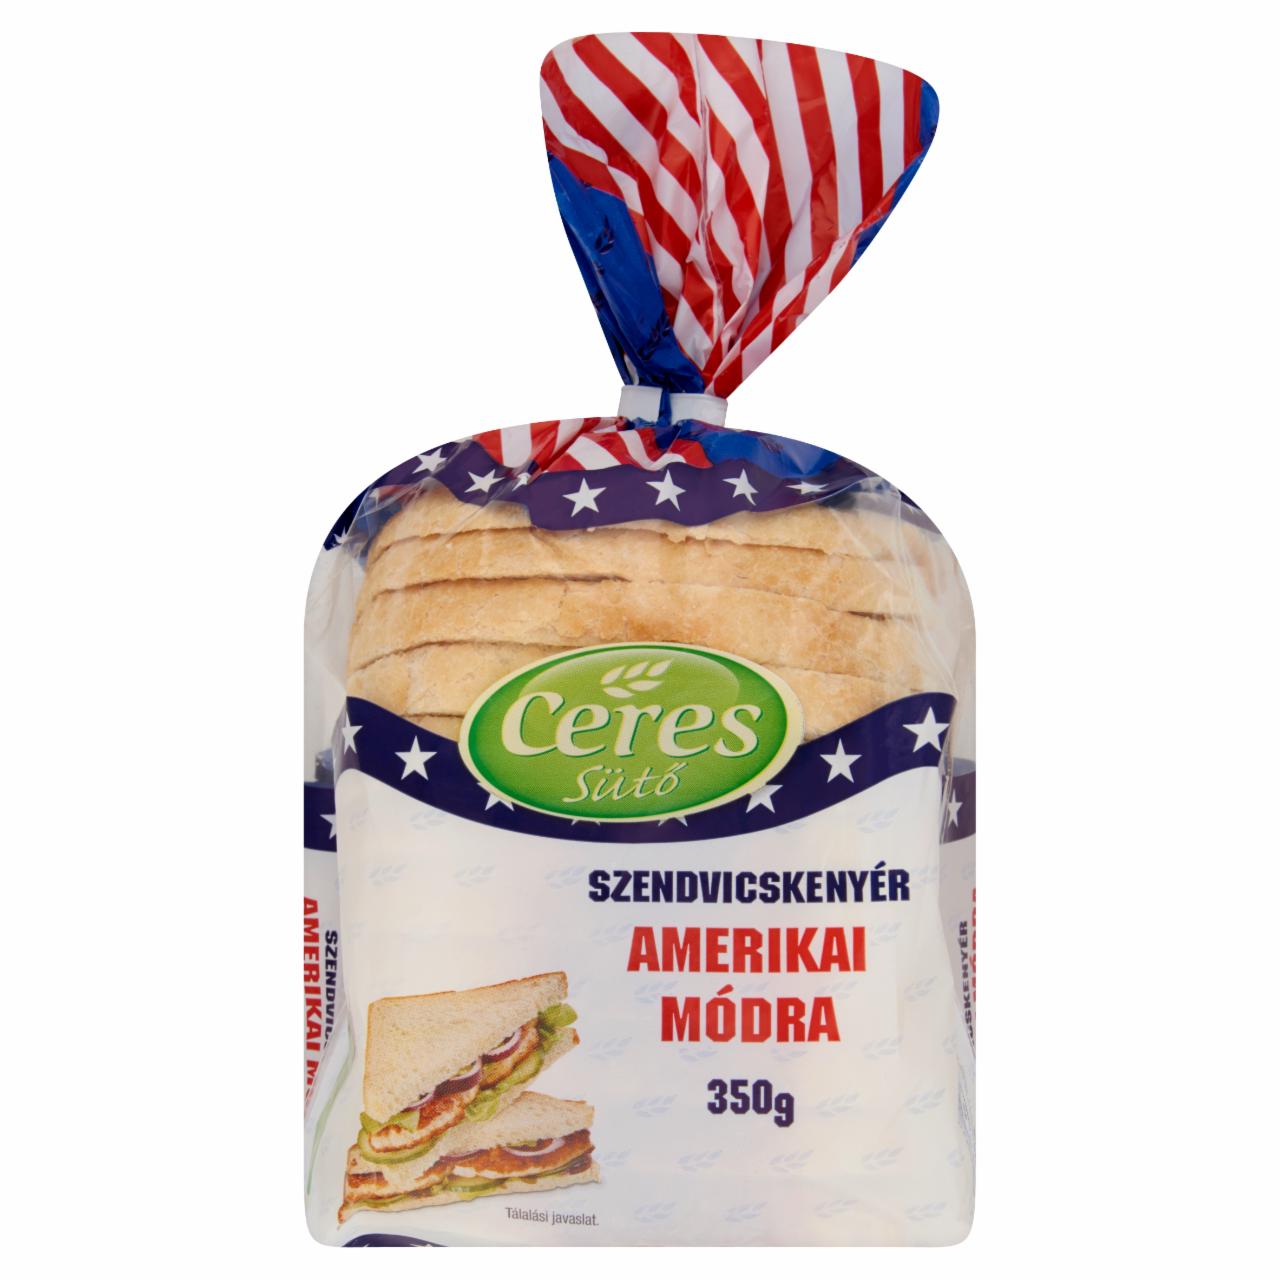 Képek - Ceres Sütő szendvicskenyér amerikai módra 350 g